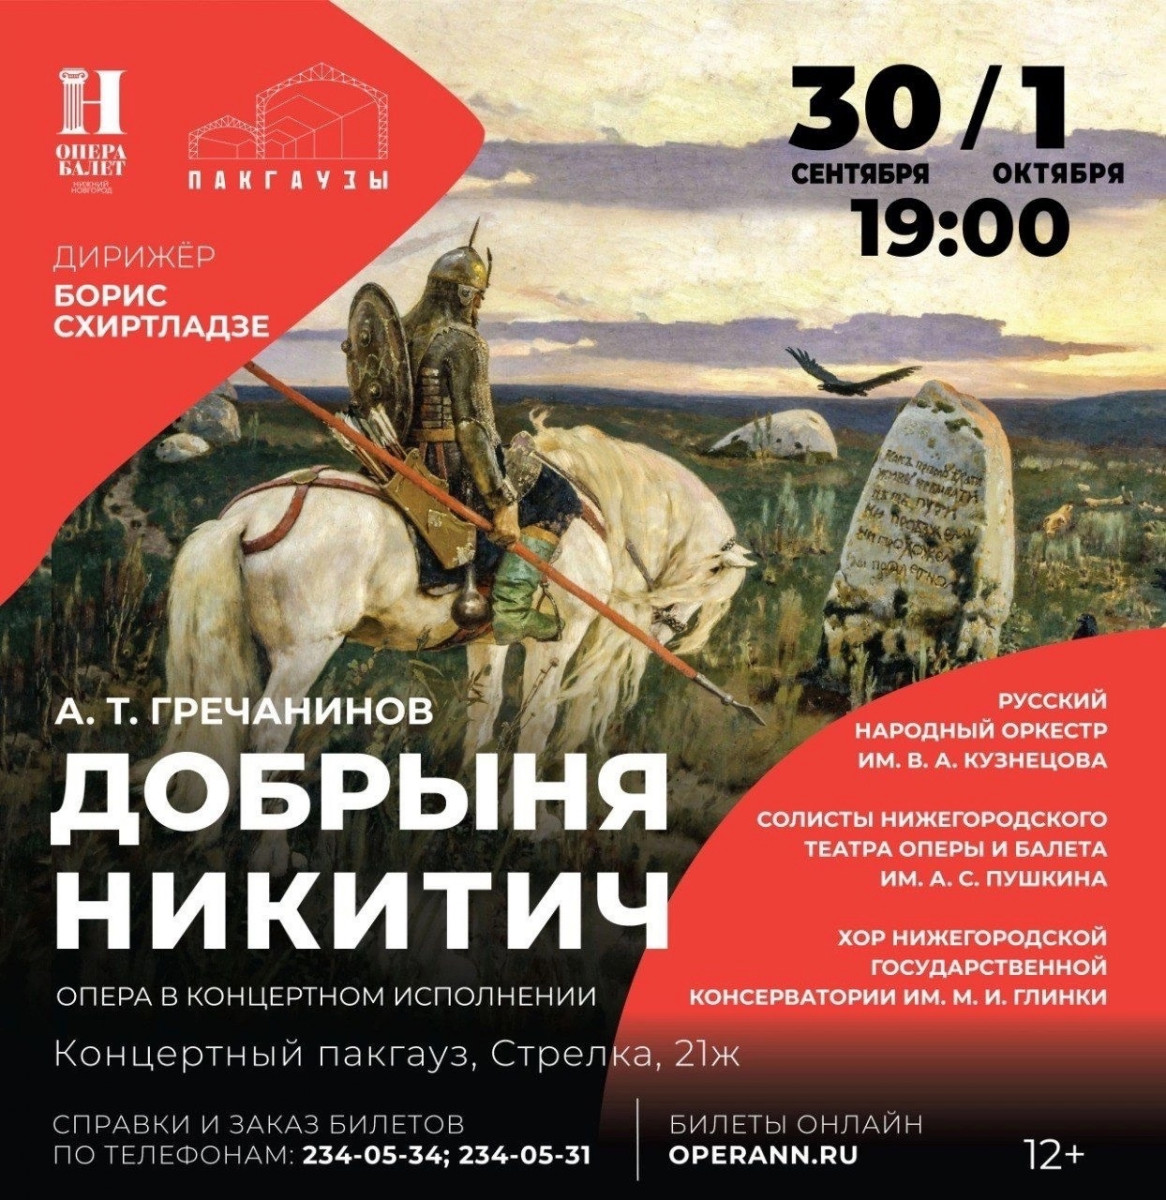 Премьерные показы оперы «Добрыня Никитич» пройдут в нижегородских Пакгаузах